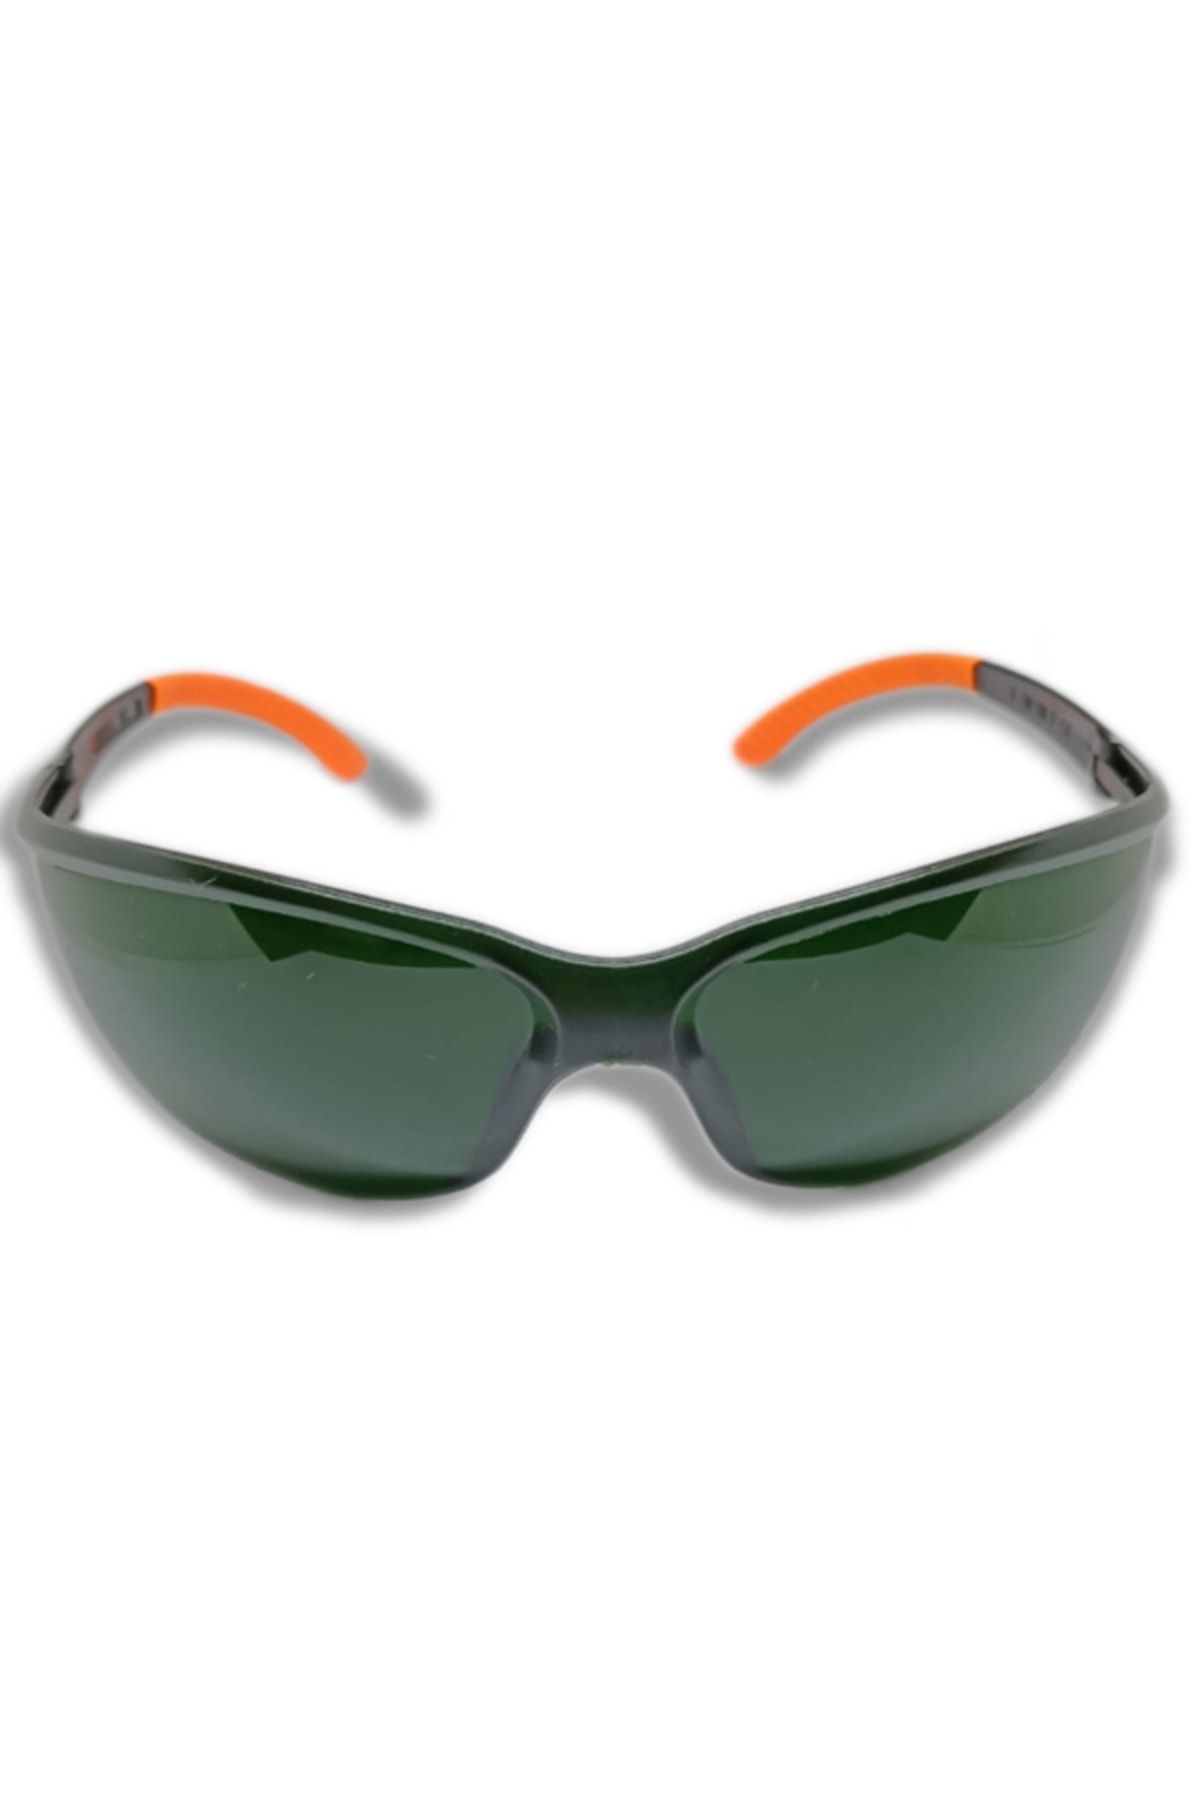 ARMONİKONYA Sport Yeşil Ipl Lazer Uygulama Epilasyon Gözlüğü Mavi Işın Koruyucu Gözlük Göz Koruyucu Lazer